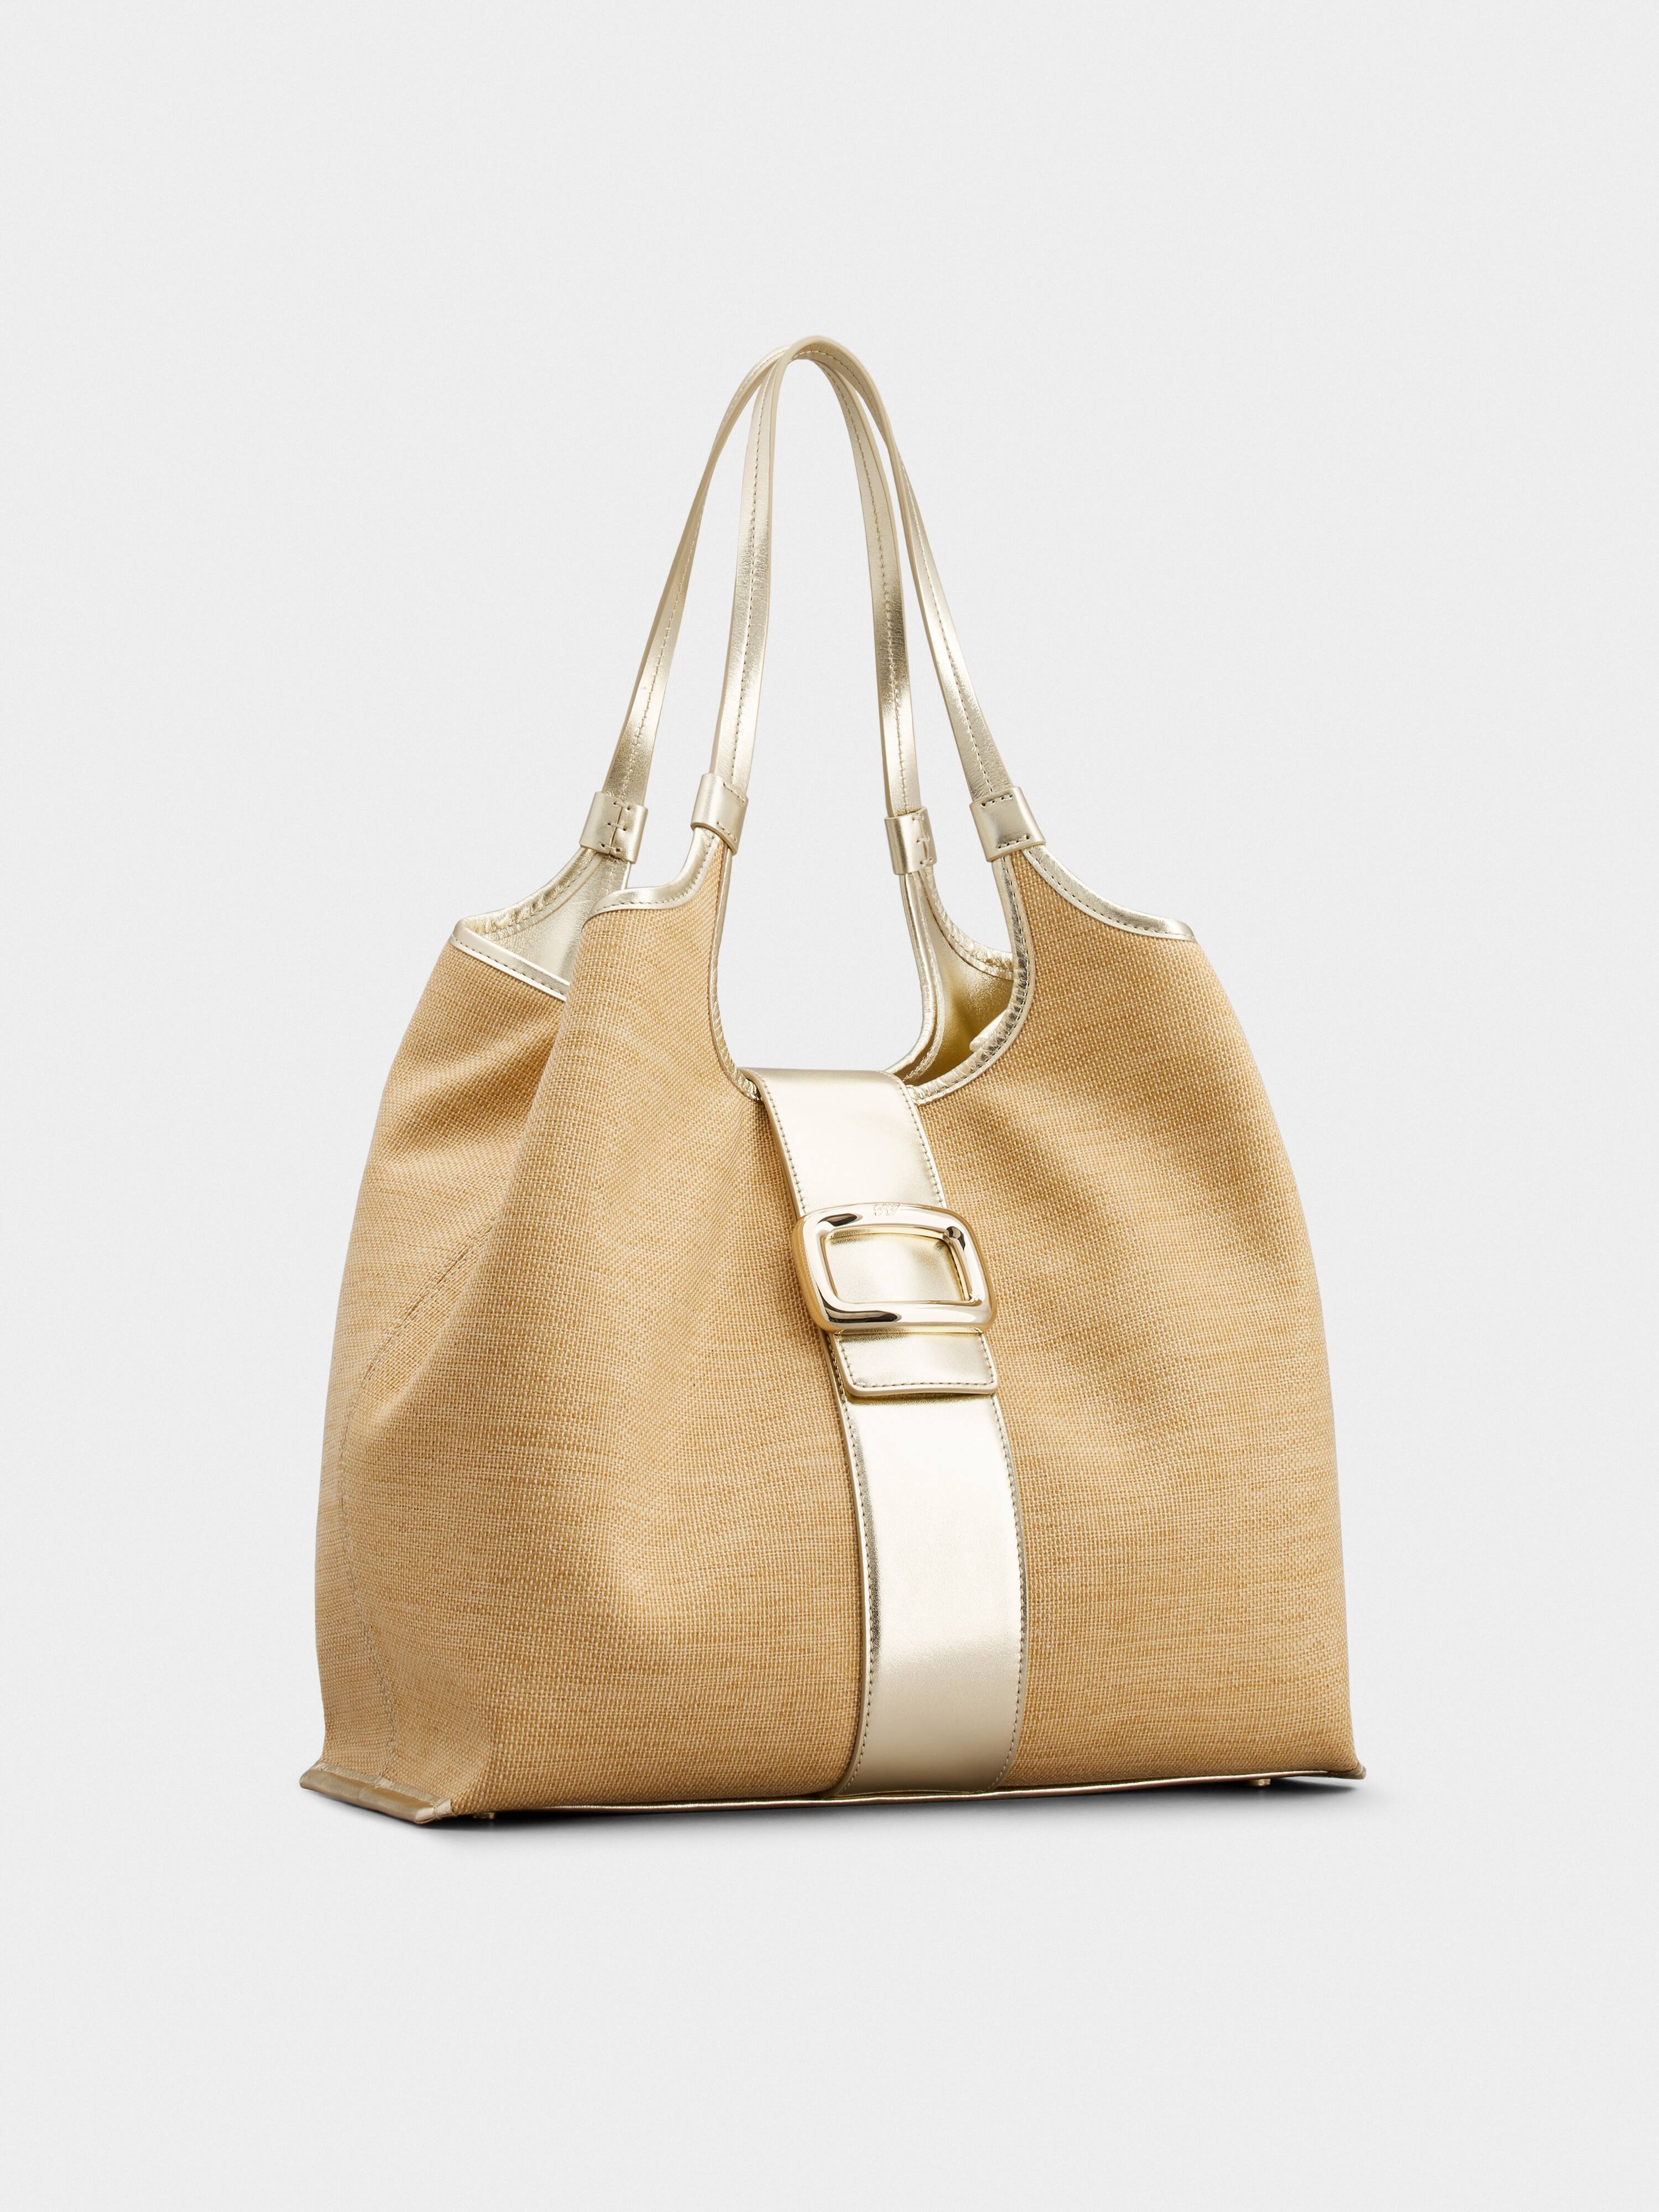 Viv' Choc Medium Shopping Bag in Fabric - 2